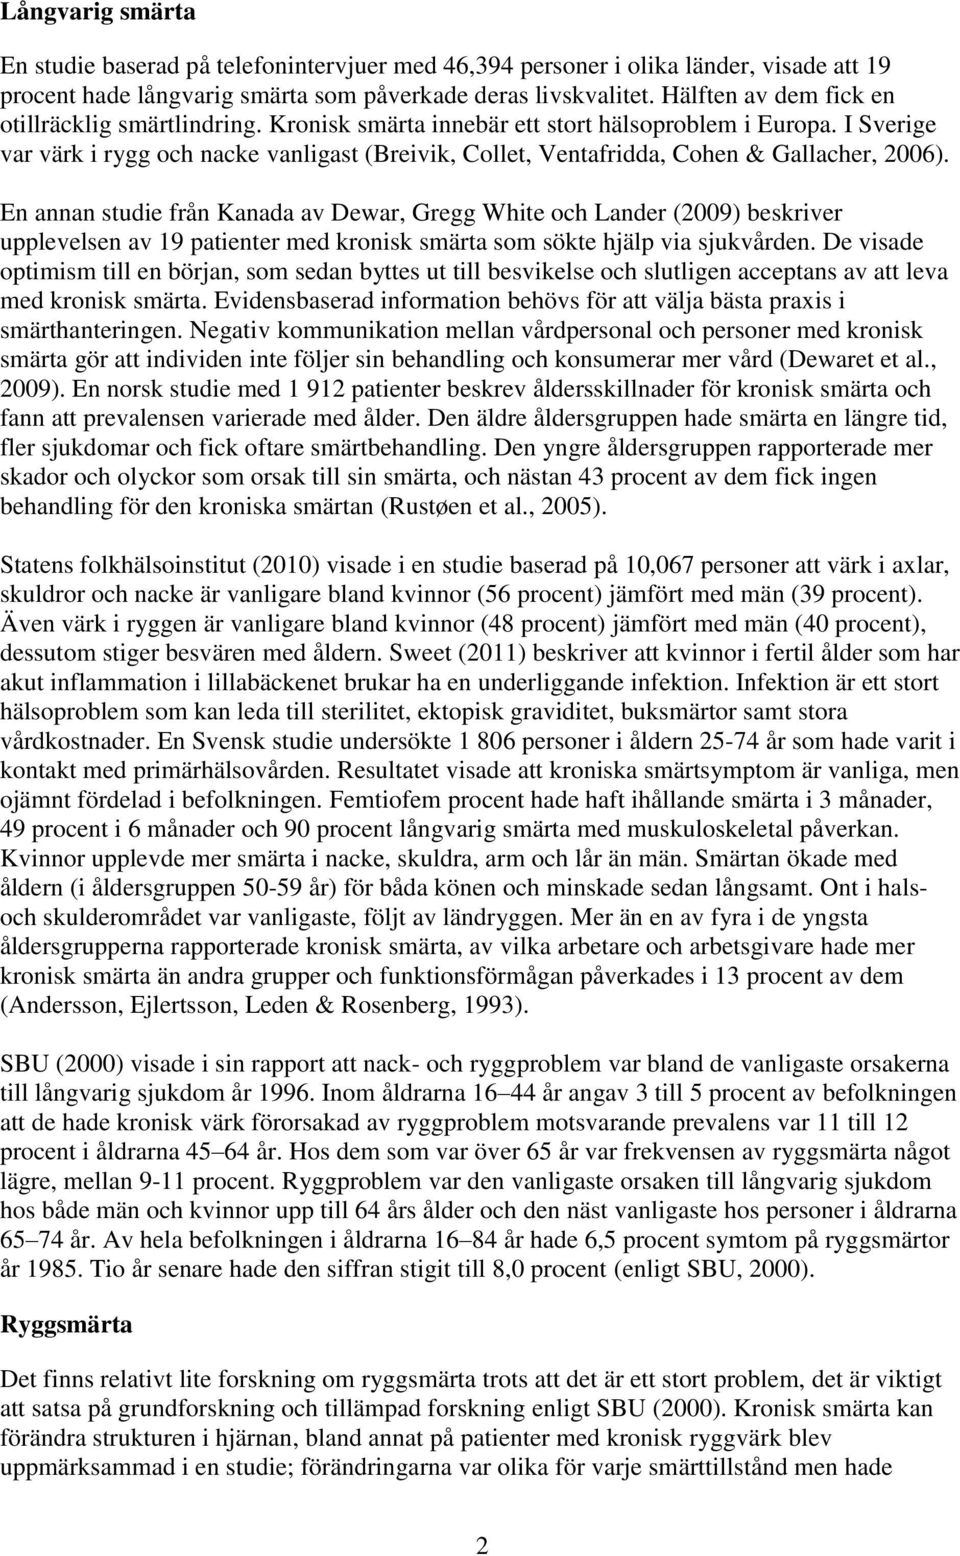 I Sverige var värk i rygg och nacke vanligast (Breivik, Collet, Ventafridda, Cohen & Gallacher, 2006).